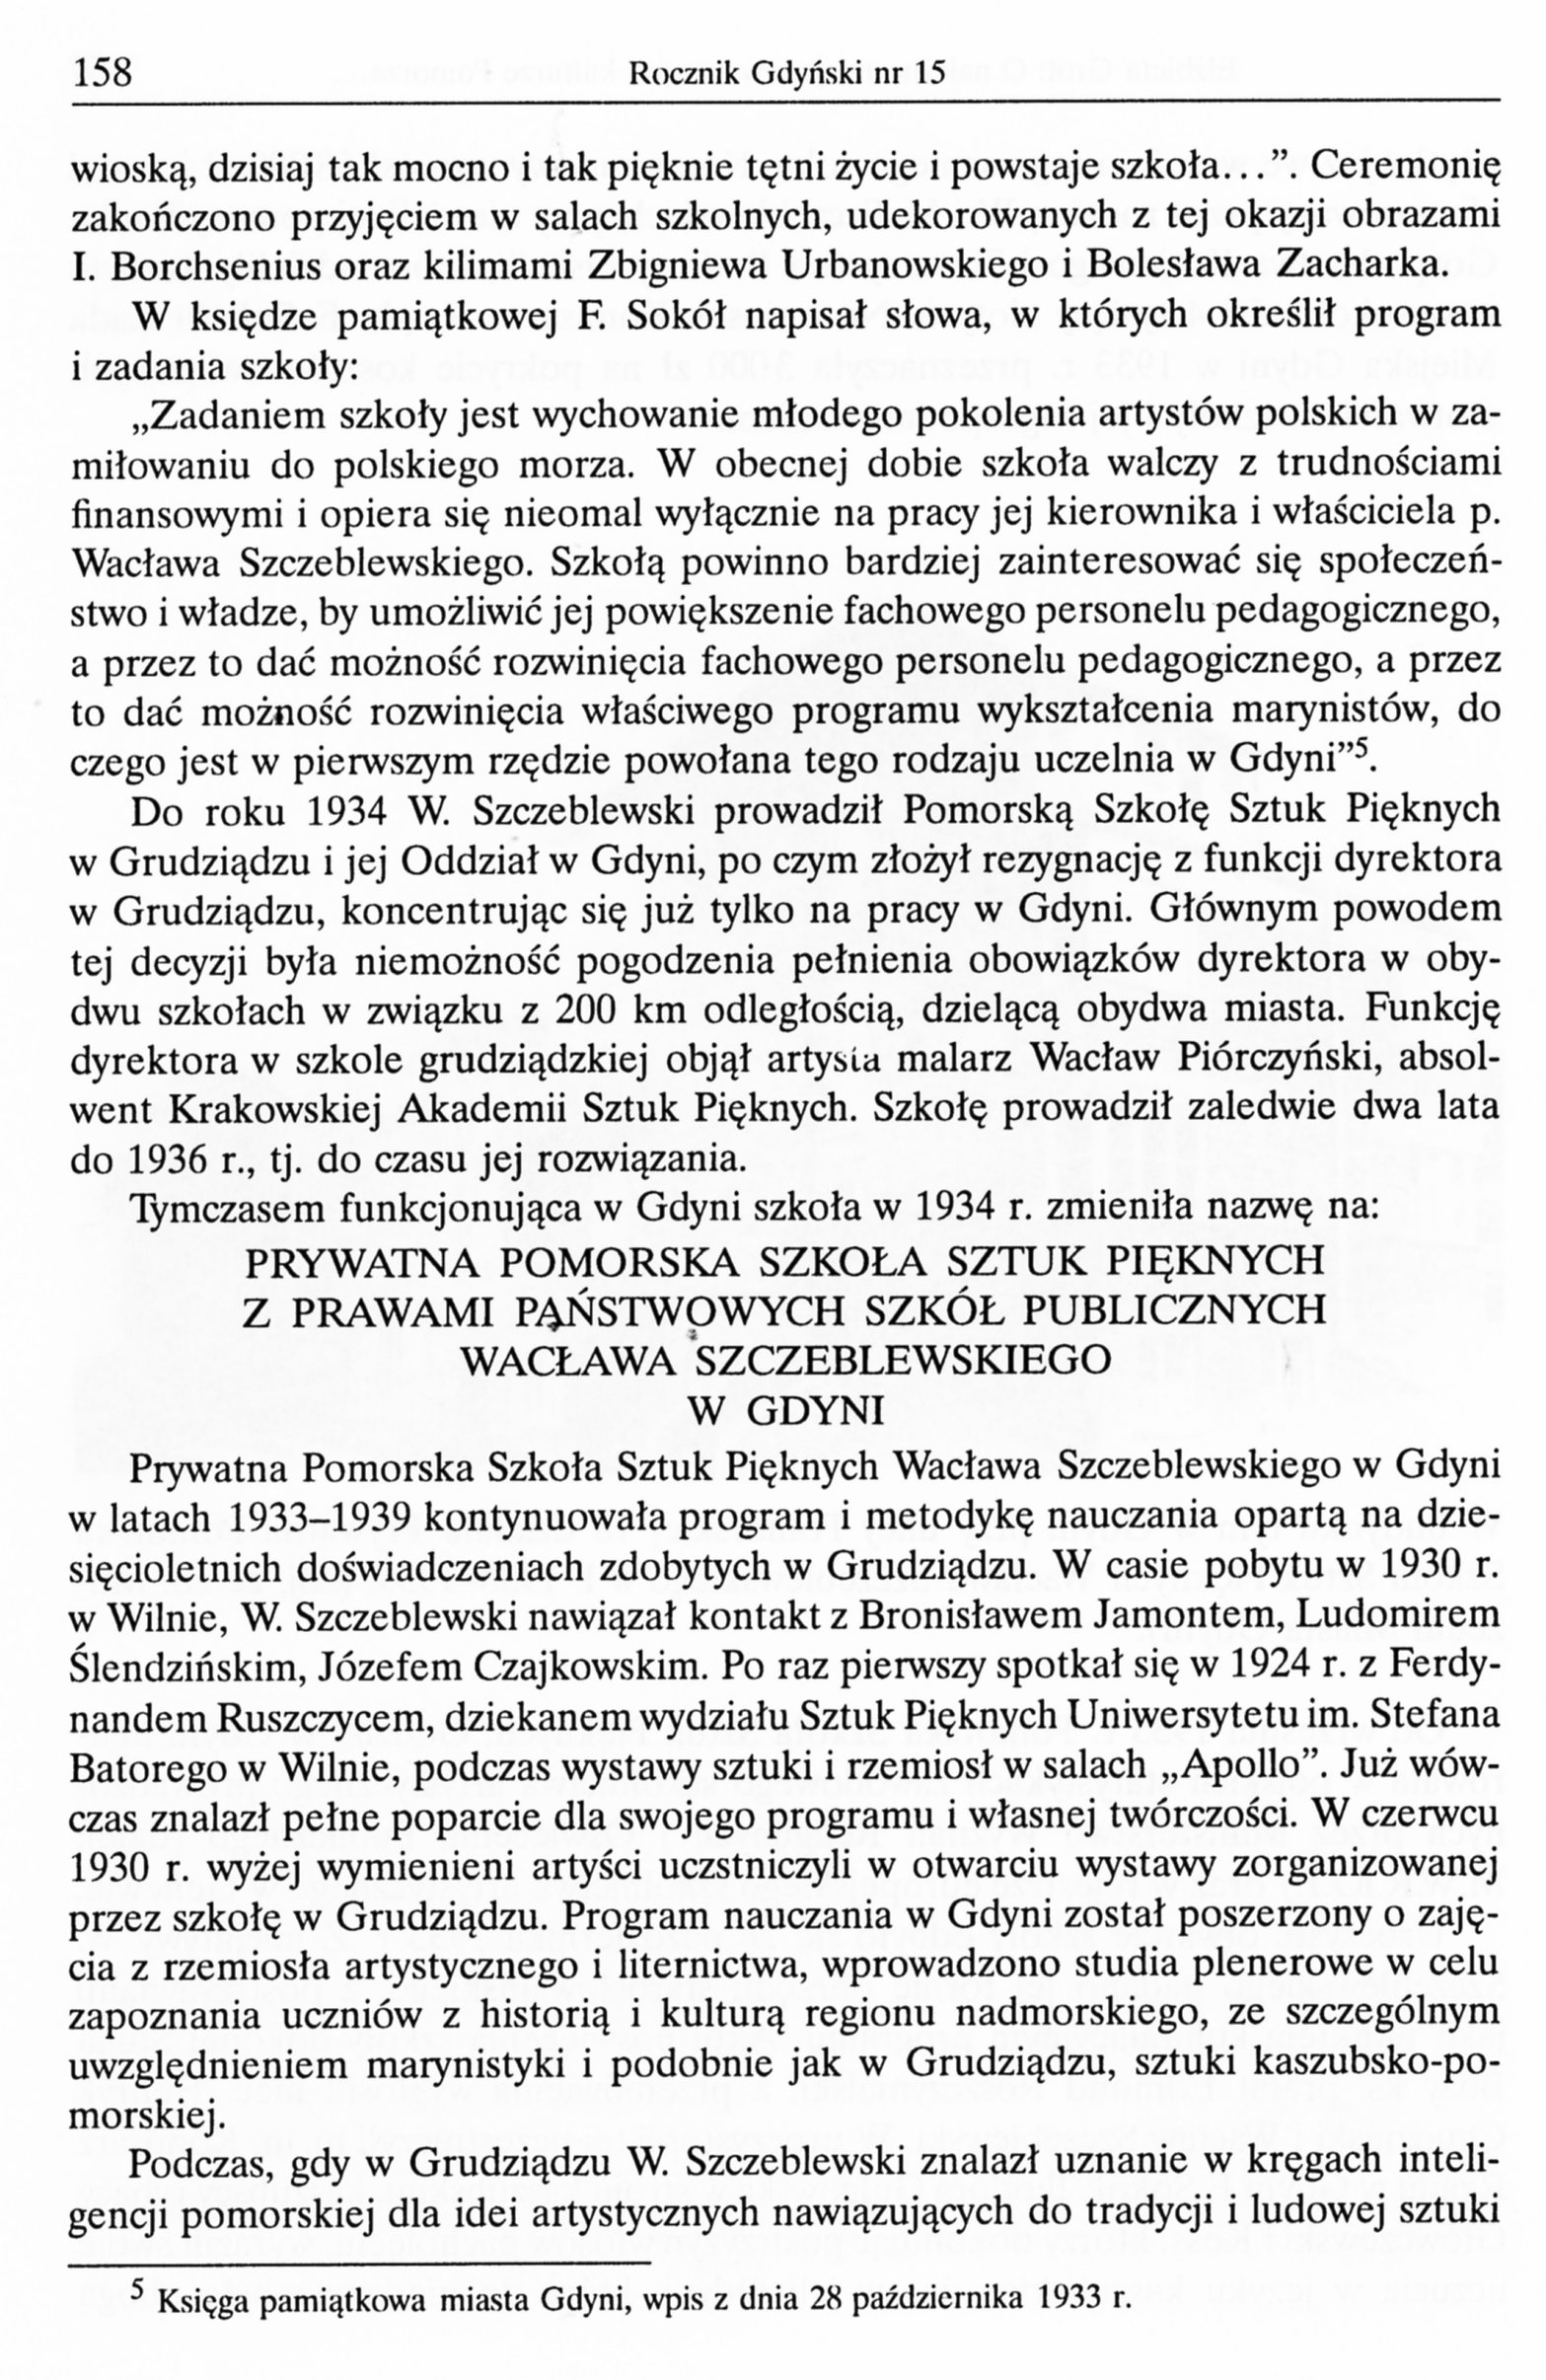 Pomorska Szkoła Sztuk Pięknych W. Szczeblewskiego w Grudziądzu i Gdyni w latach 1922-1939